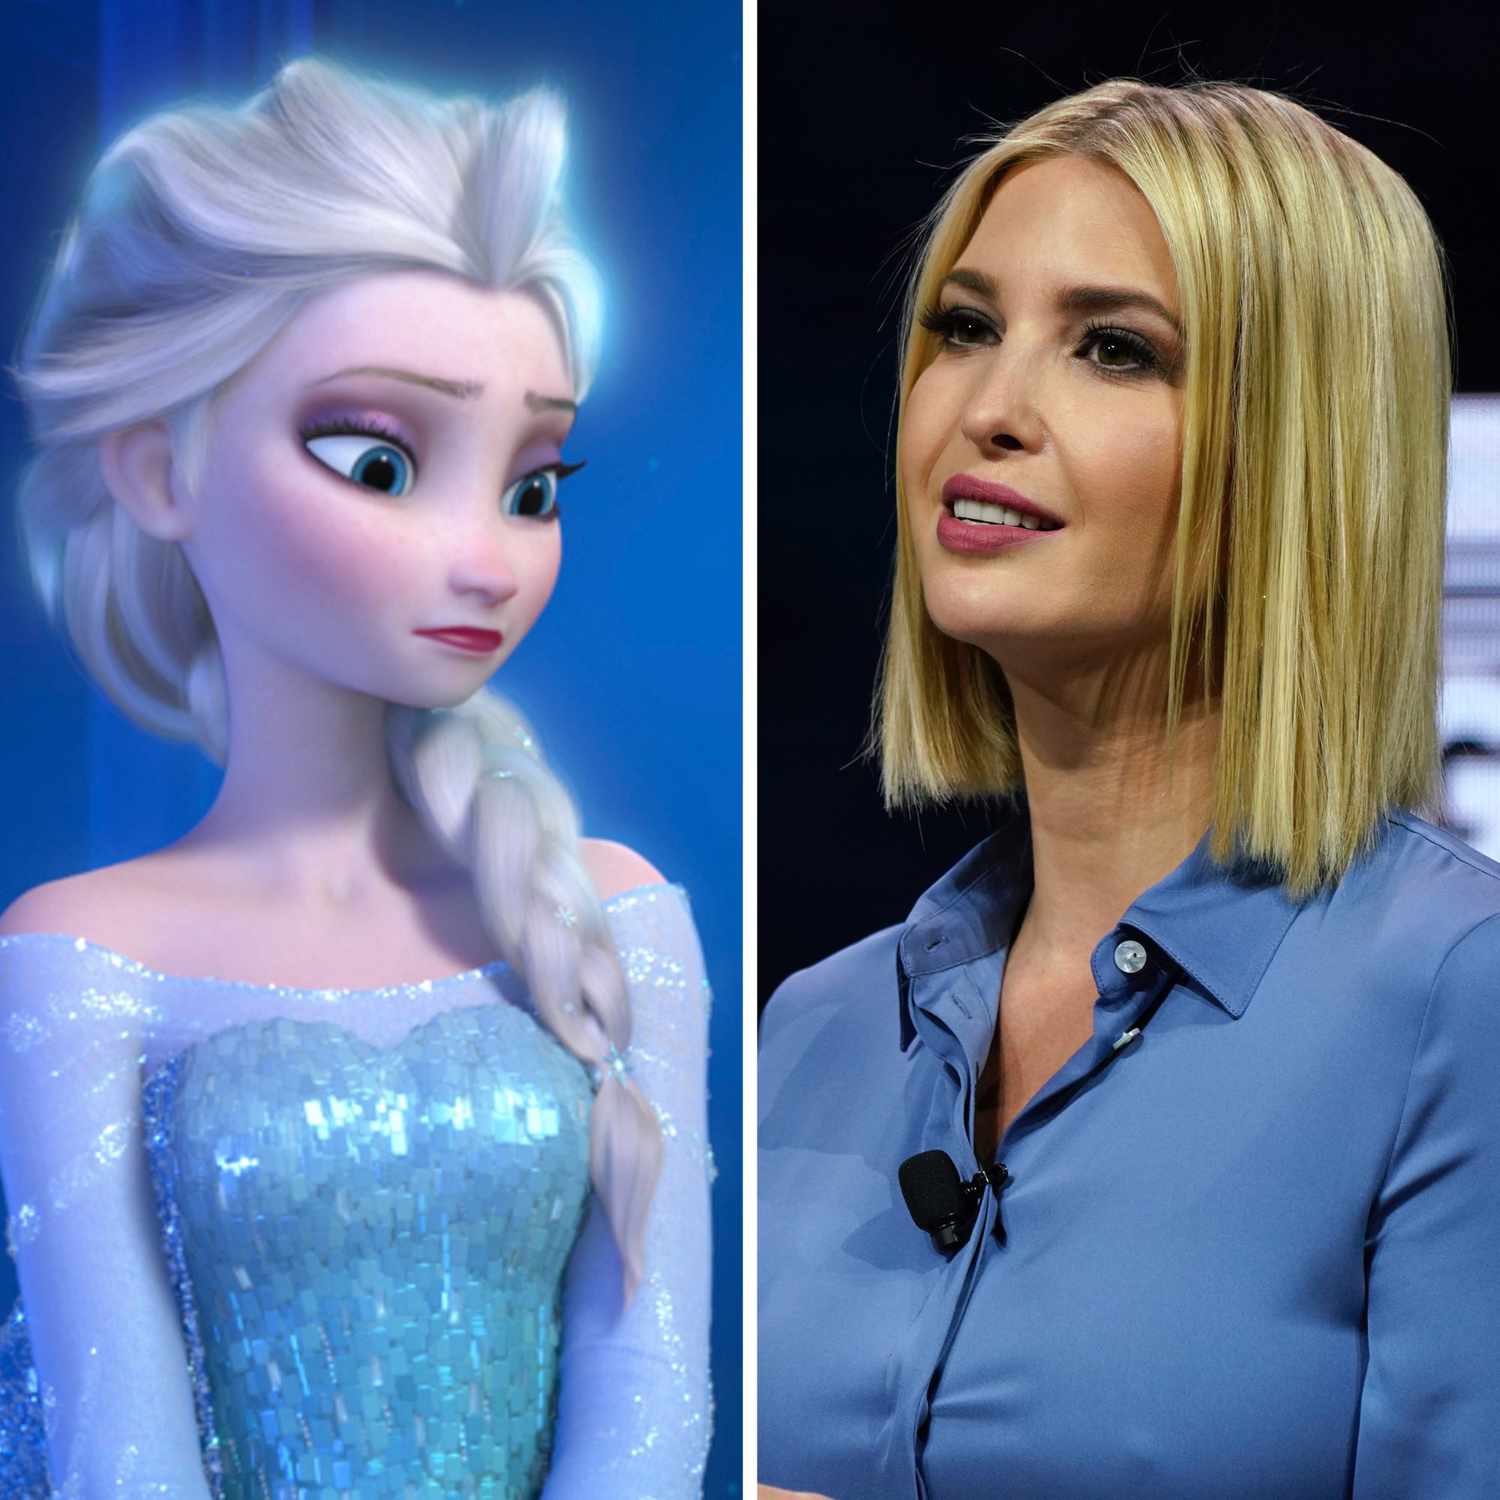 vestido que Ivanka Trump usó en la boda de su hermana ¡la comparan con Elsa the Frozen